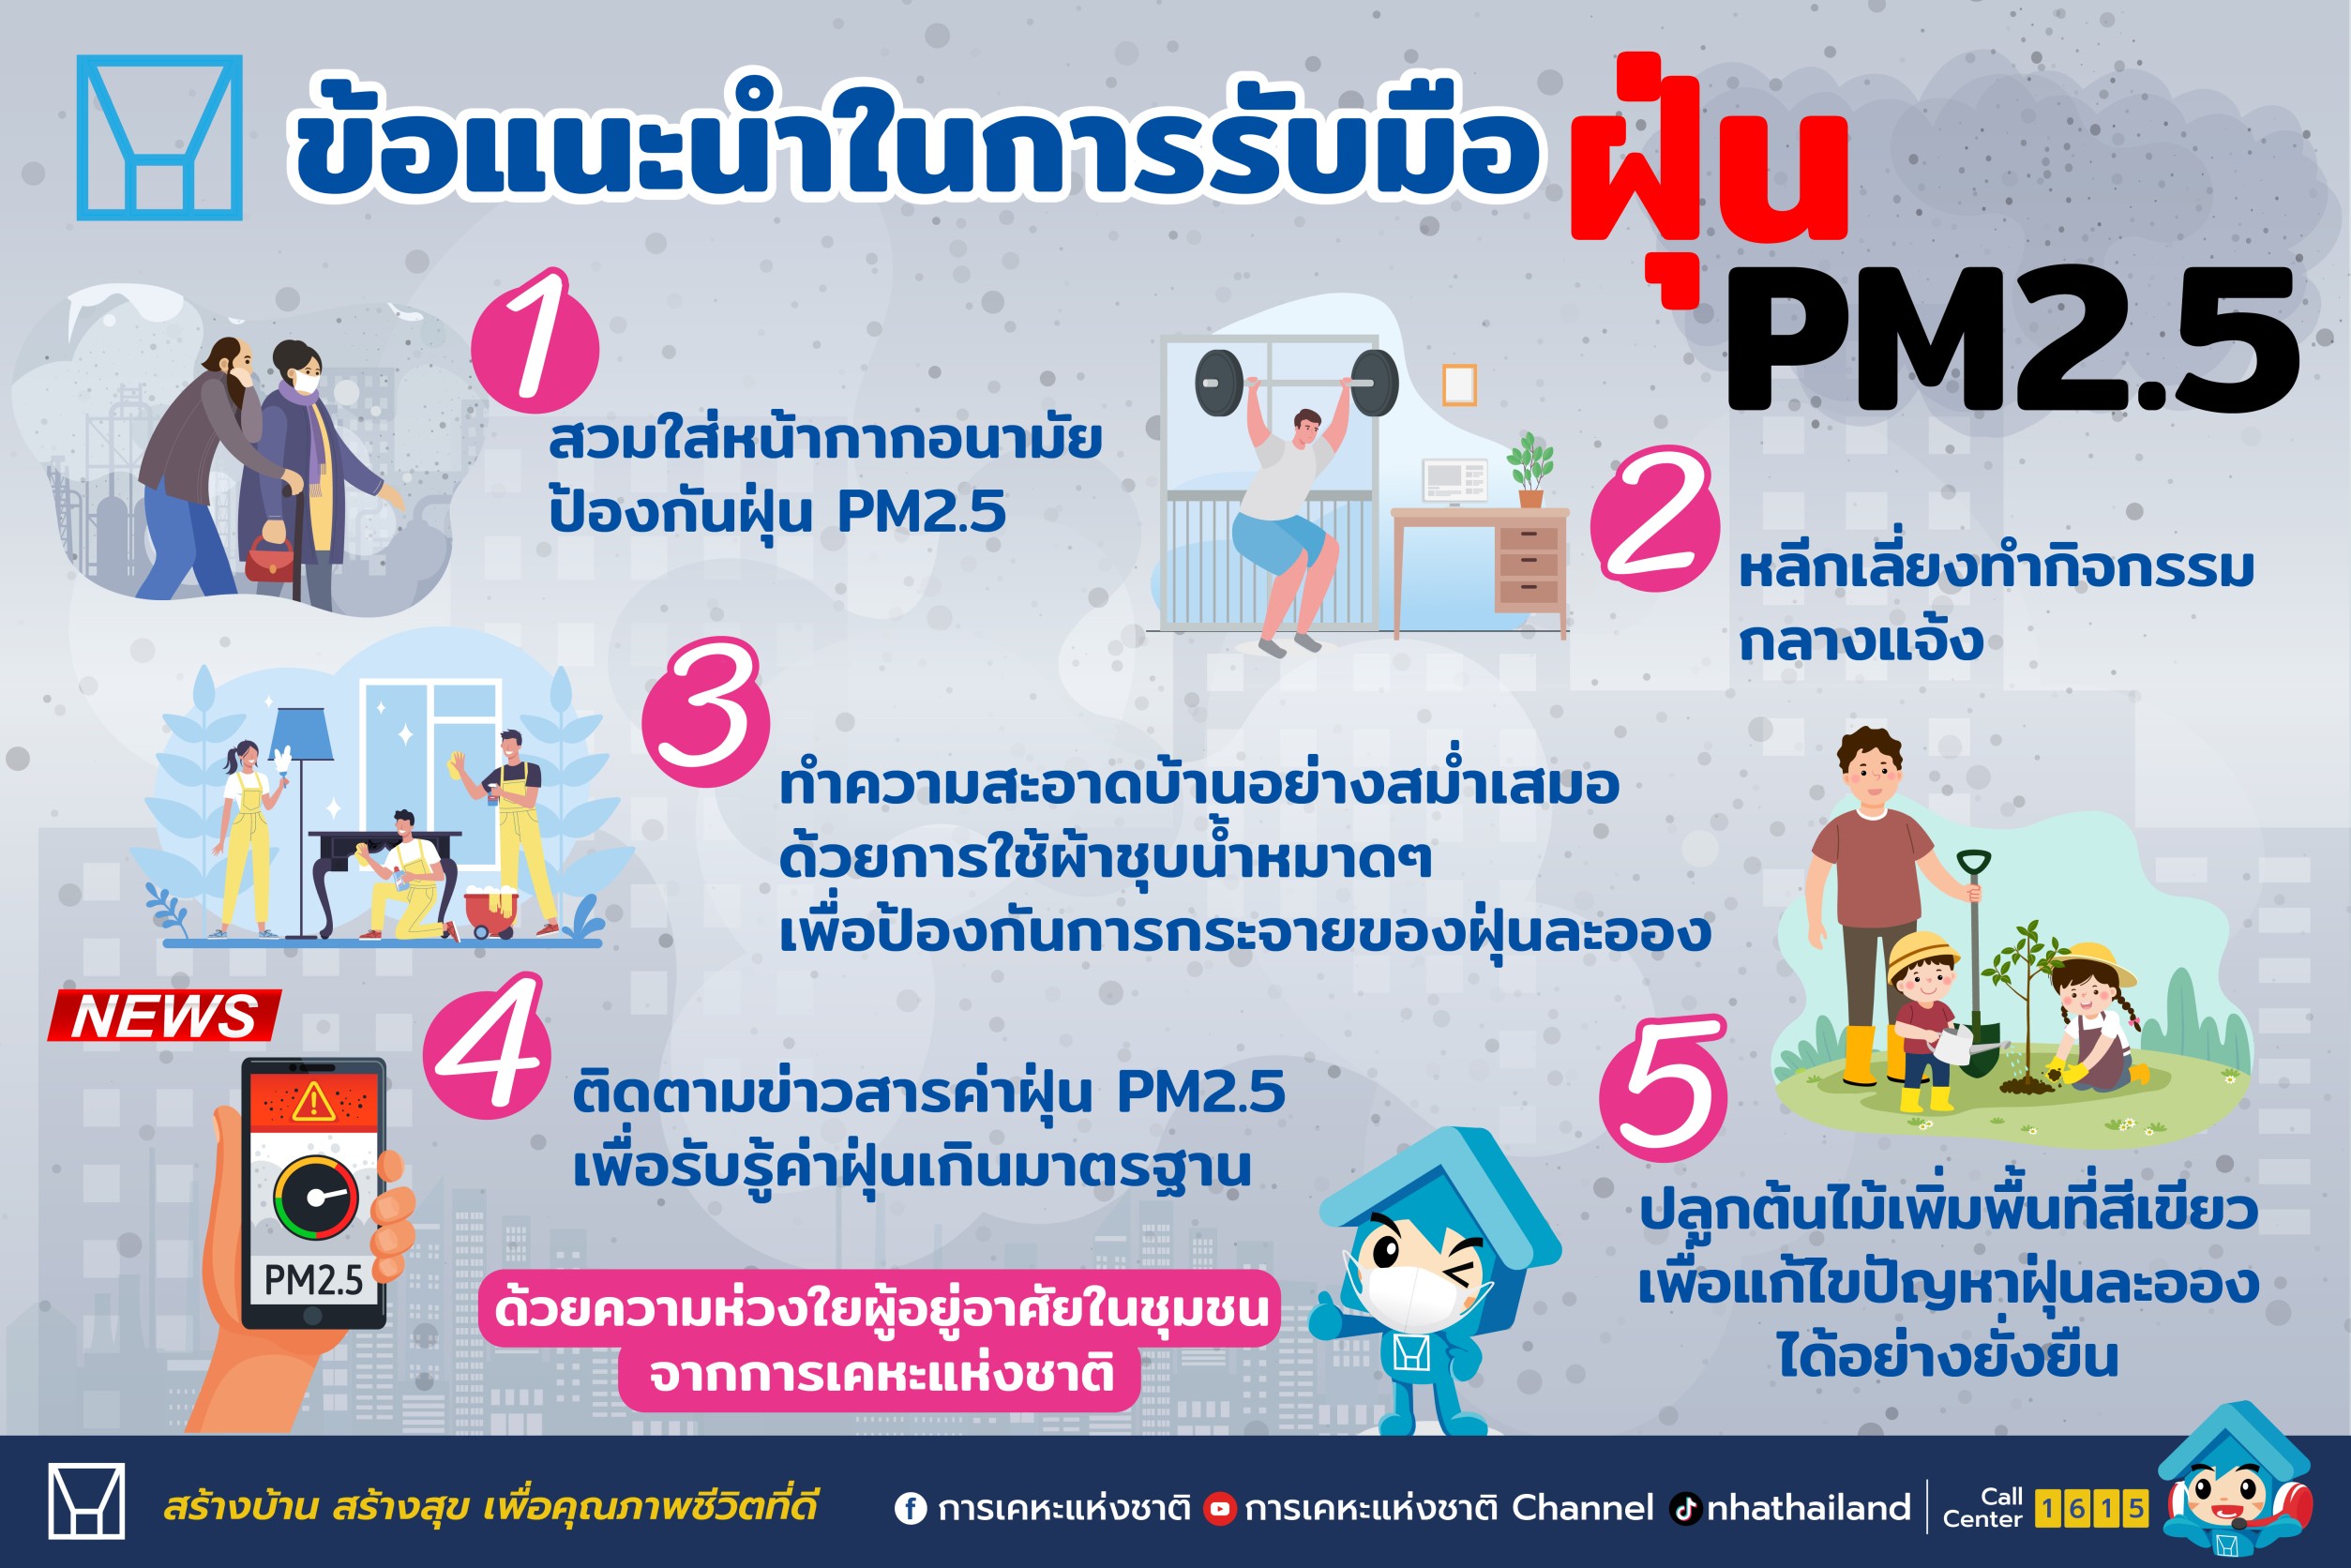 การเคหะแห่งชาติคลอดมาตรการด่วนแก้วิกฤต PM 2.5 ในพื้นที่ภาคเหนือ